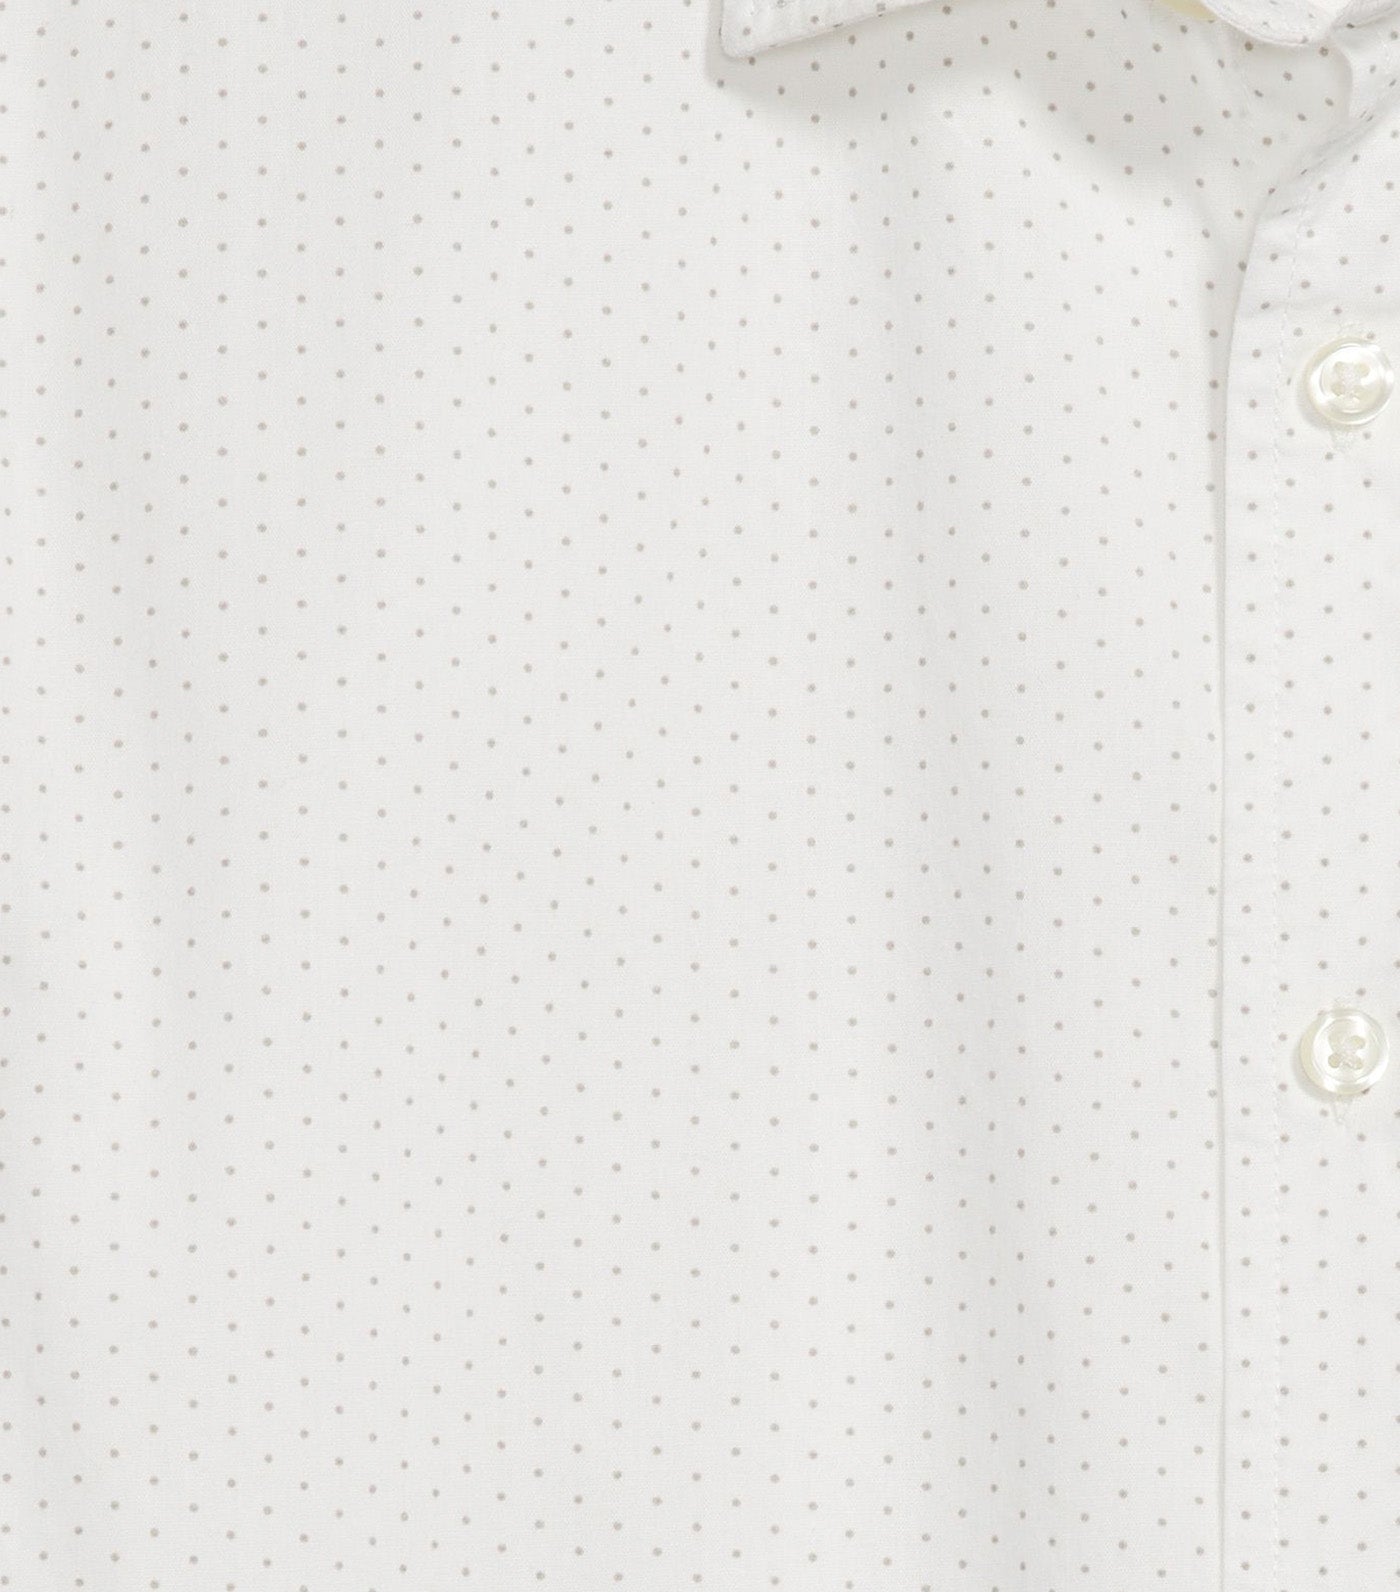 Regular-Fit Built-In Flex Everyday Shirt for Men White Dots